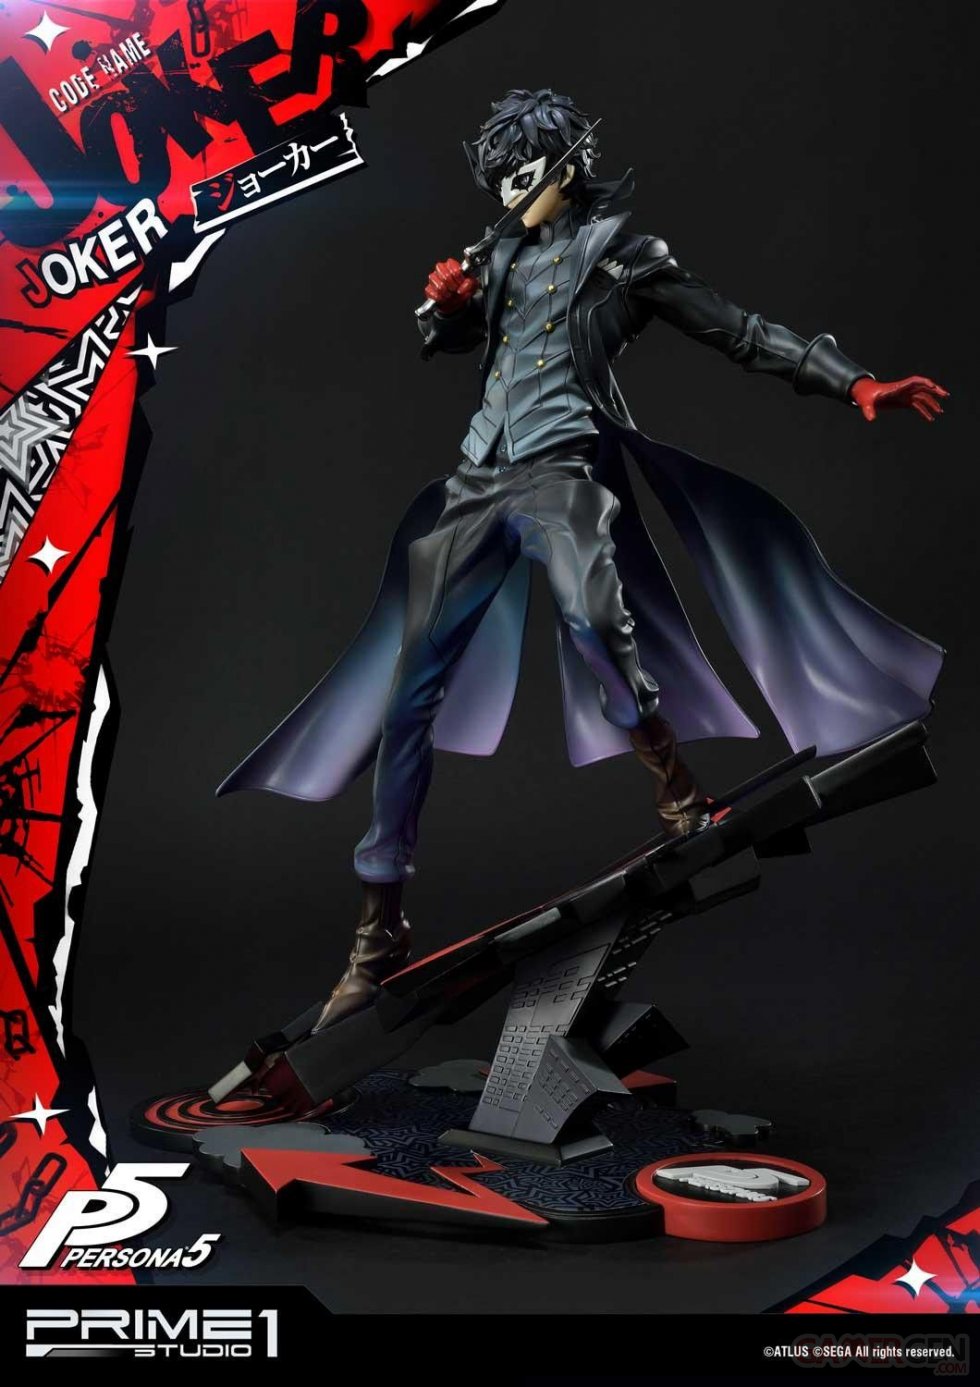 Persona-5-Joker-Prime-1-Studio-statuette-08-02-07-2020